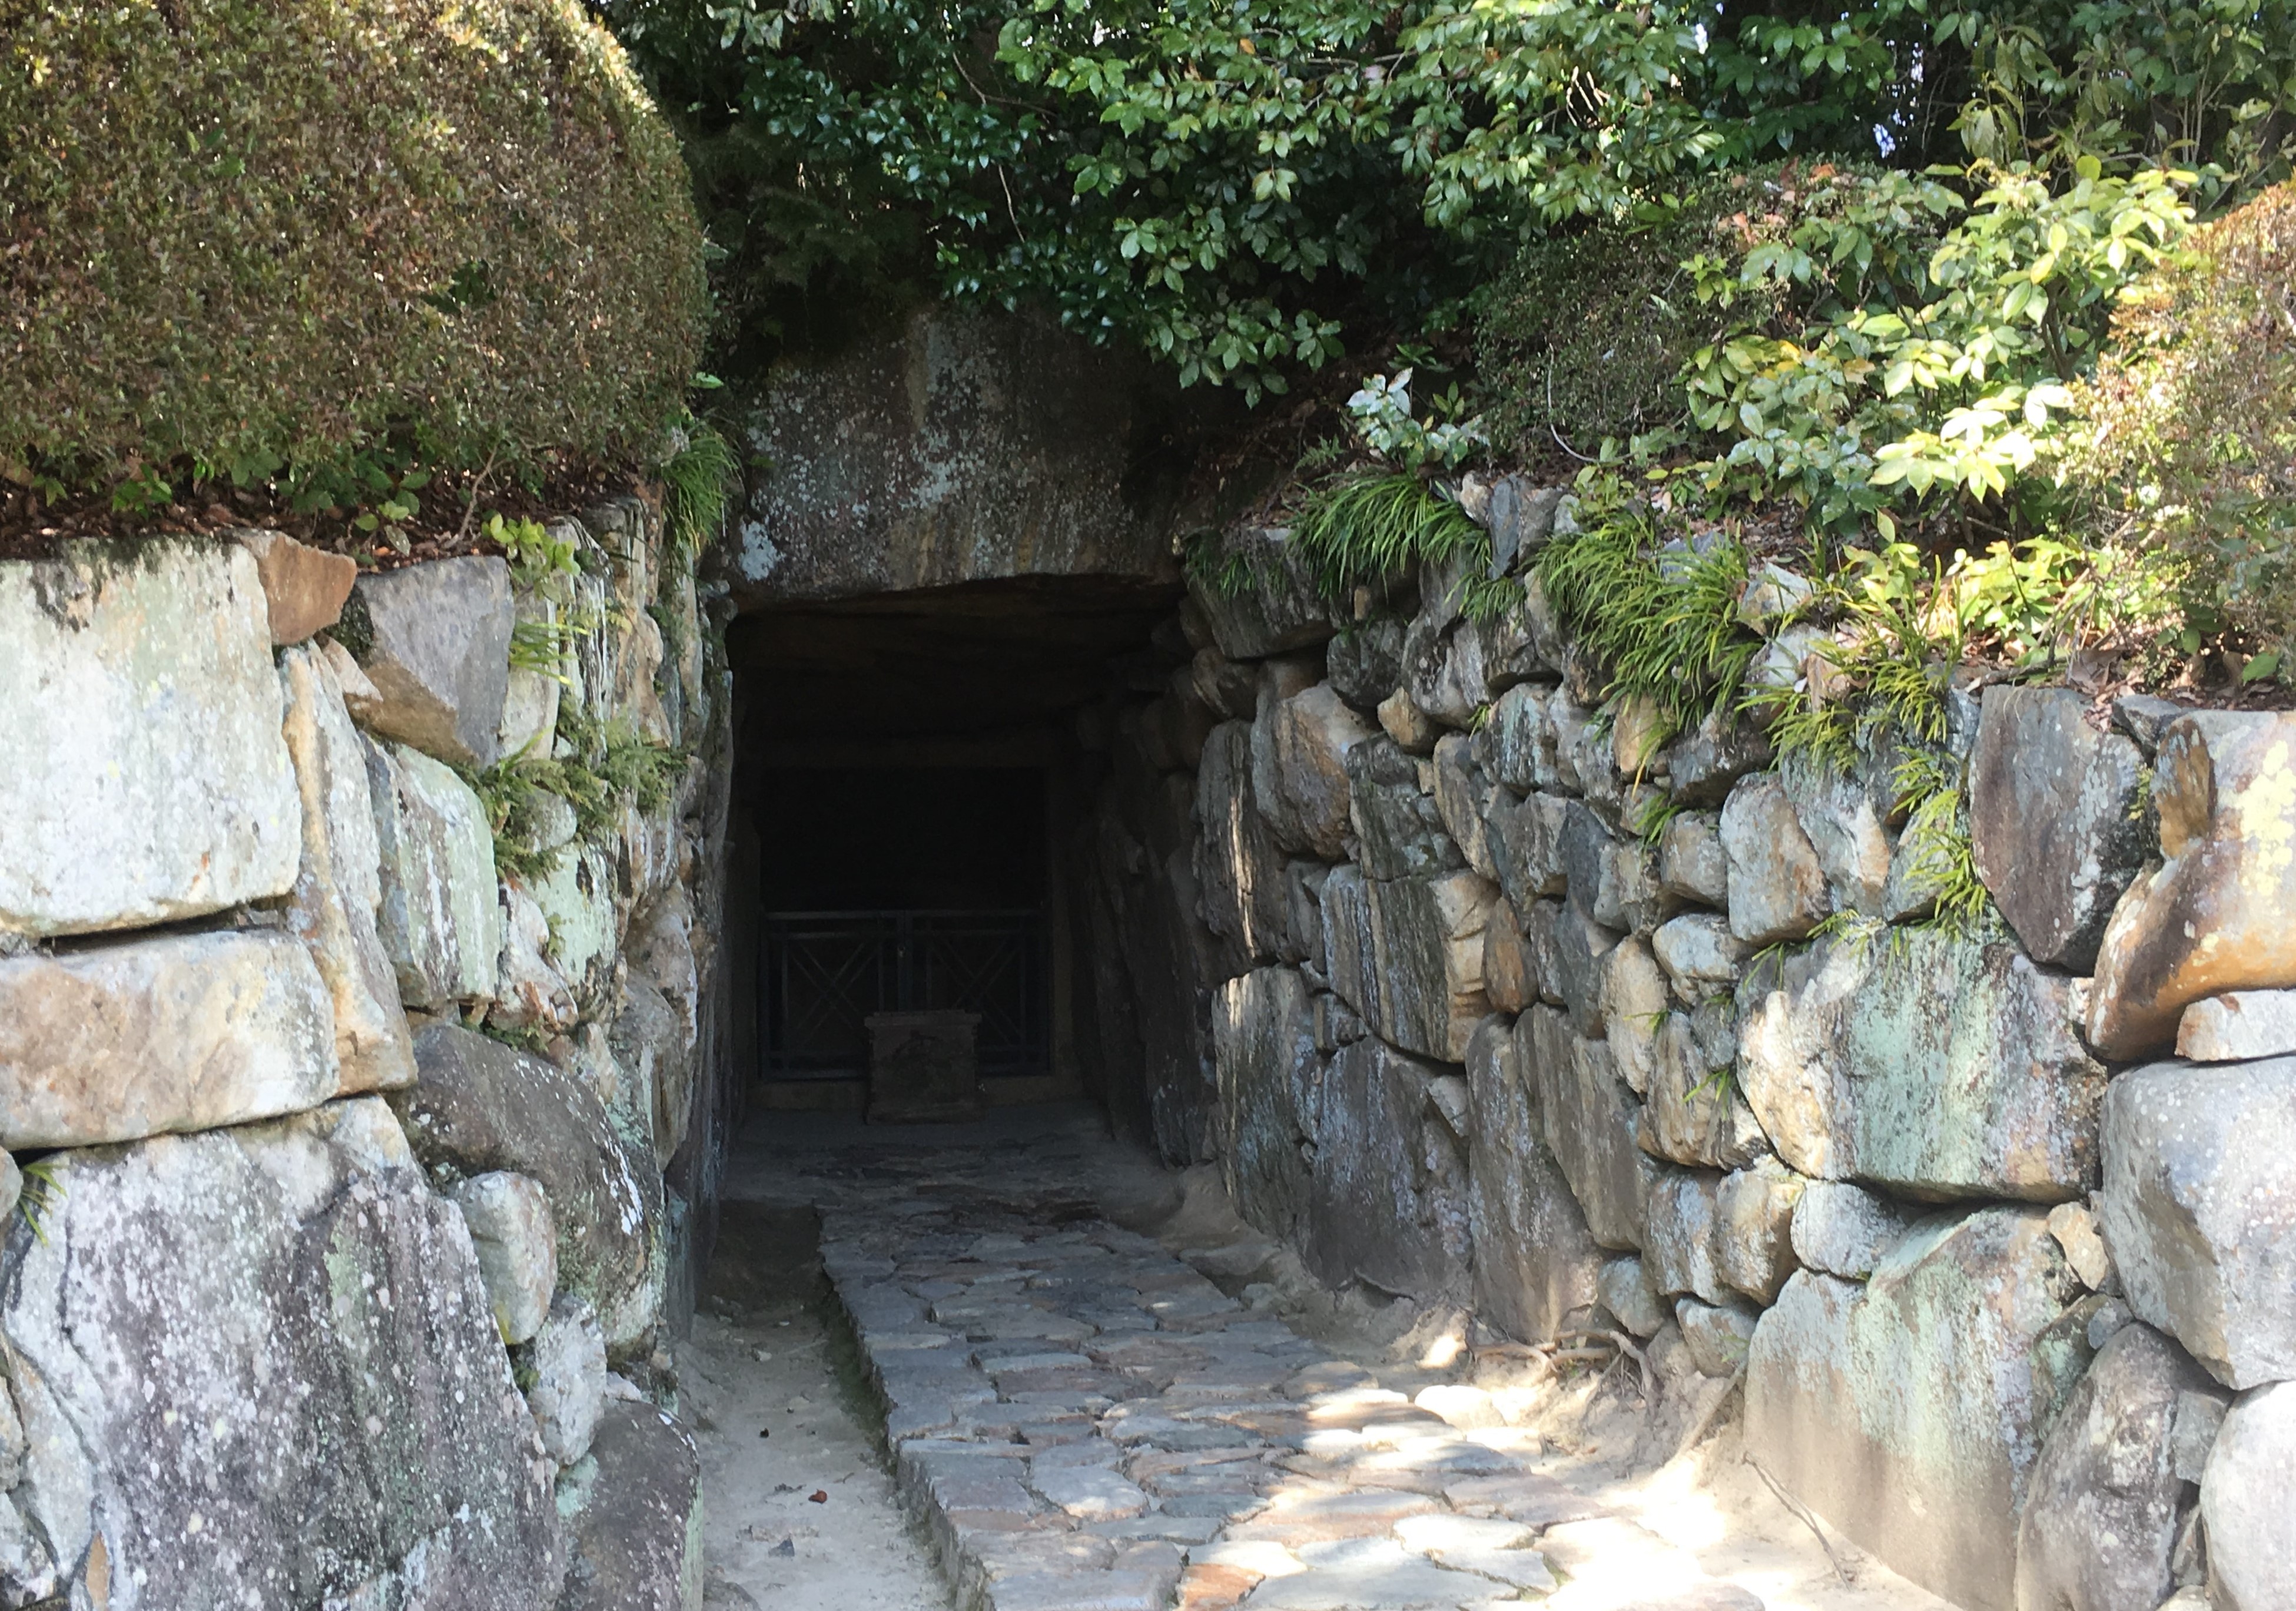 stony path leading to dark entrance of Nakayama-dera Kofun